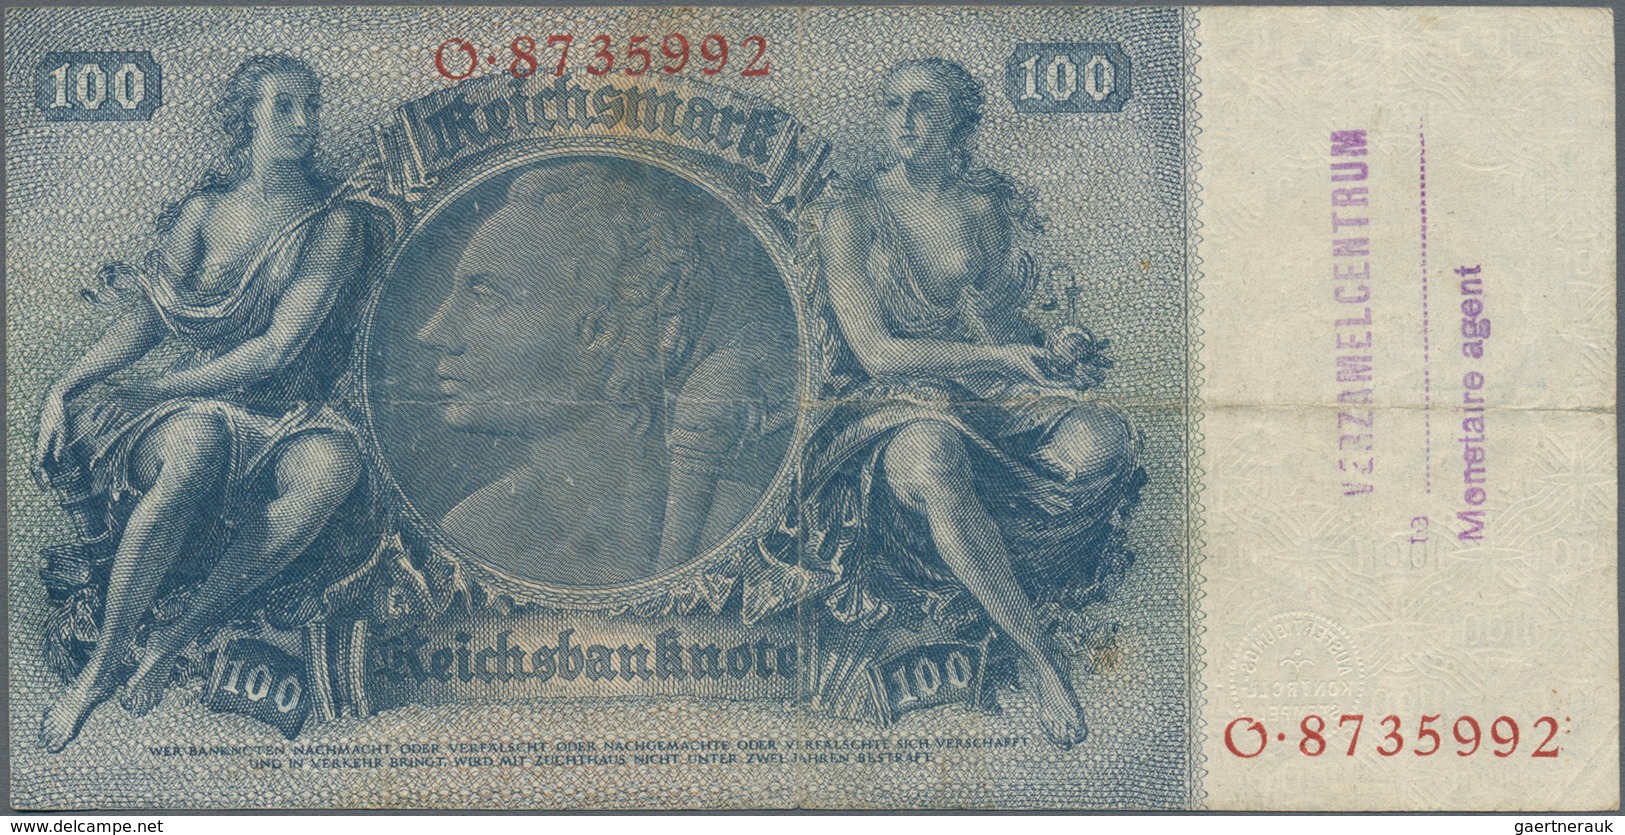 Deutschland - Deutsches Reich bis 1945: Lot mit 7 belgischen Abstempelungen auf 100 Reichsmark, dabe